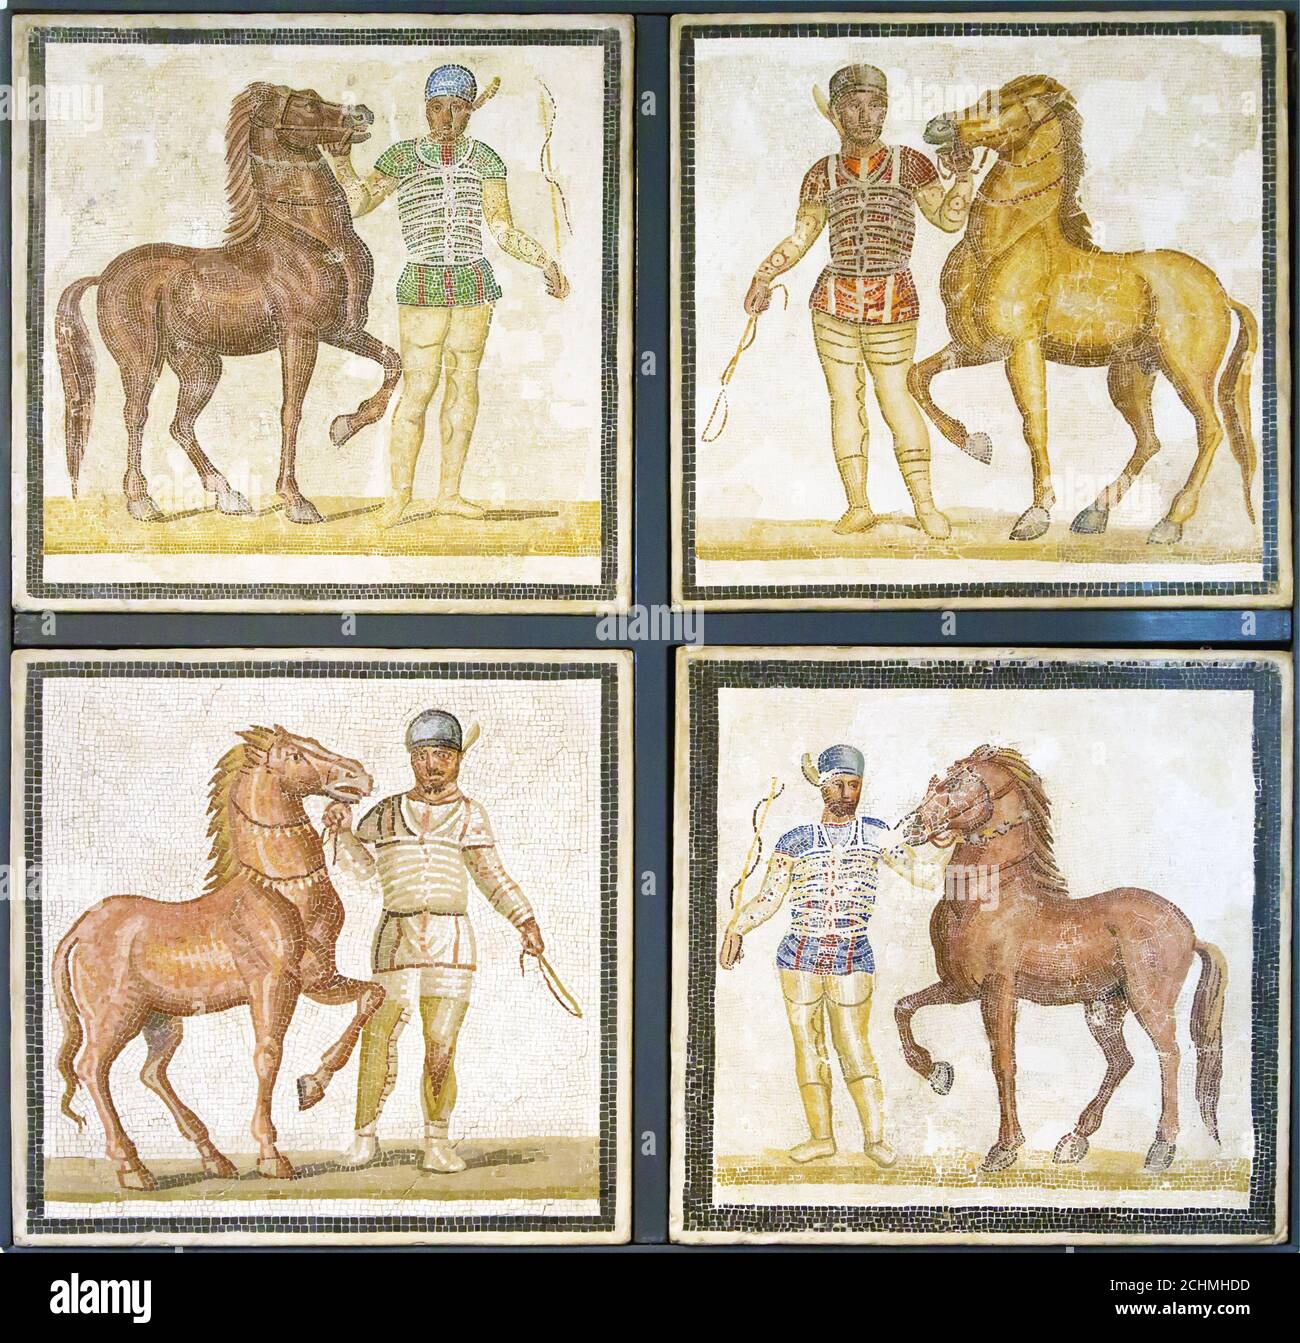 Roman mosaics of horses ready for a race Stock Photo